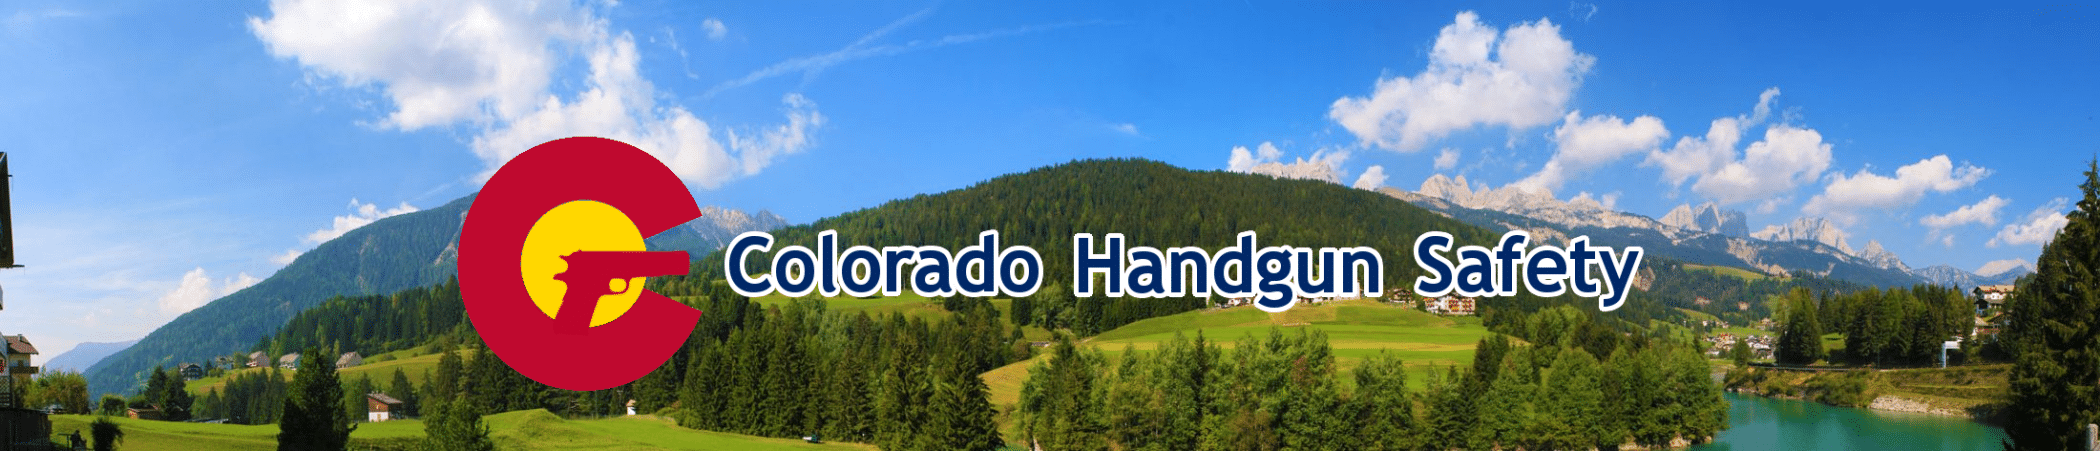 Colorado Handgun Safety - : Colorado Handgun Safety